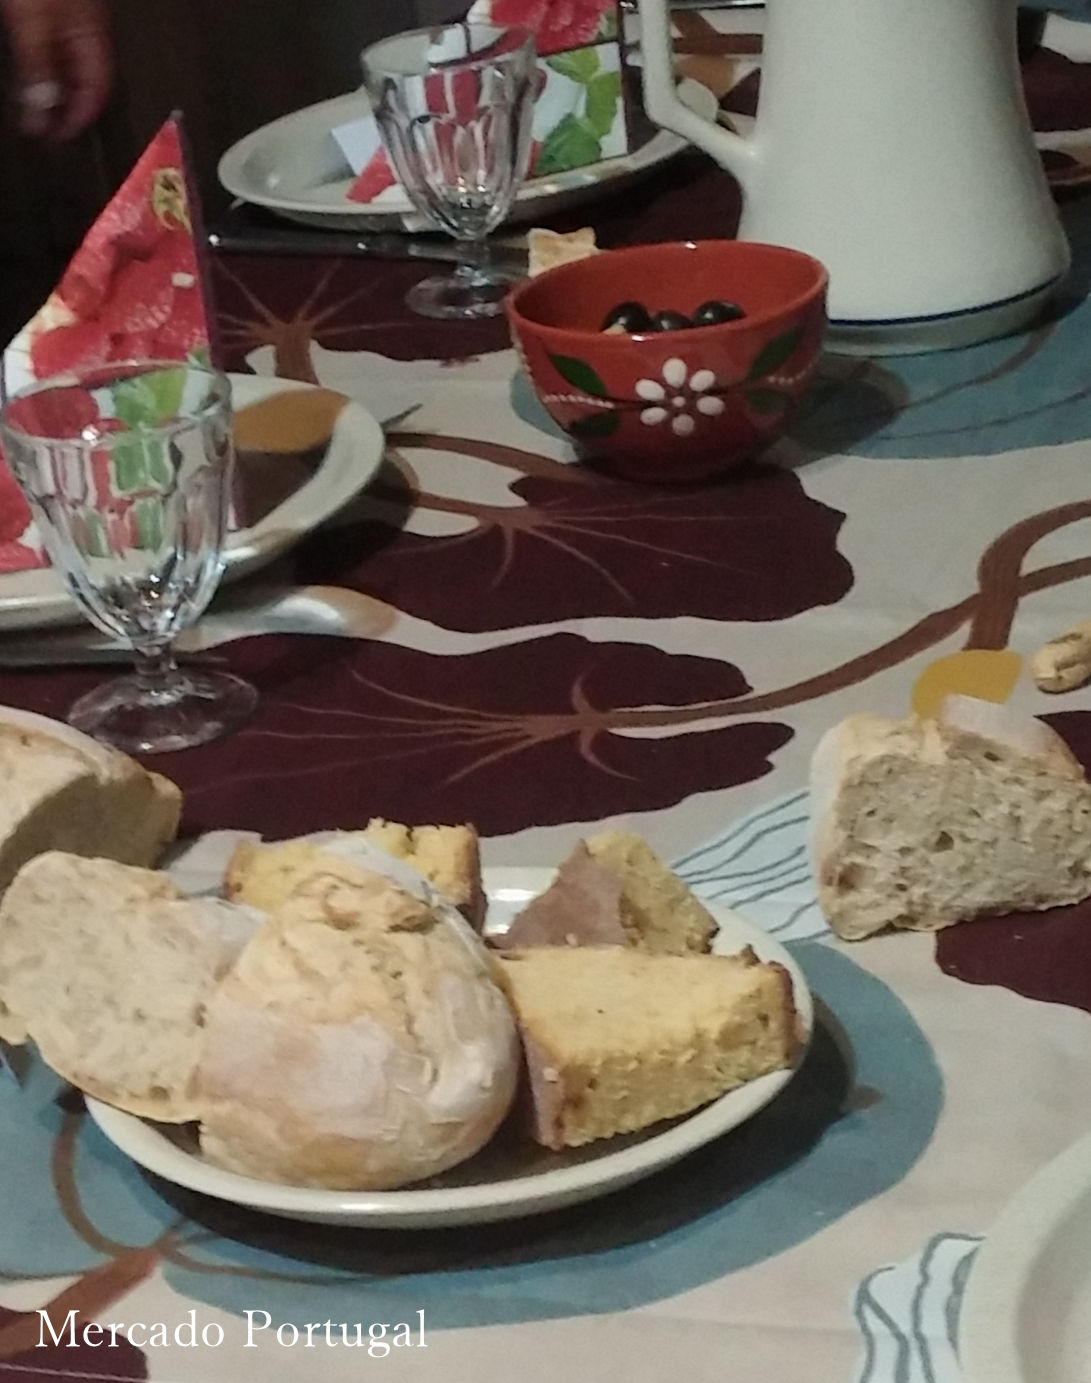 食卓にはワインとパン、ポルトガルらしい光景です